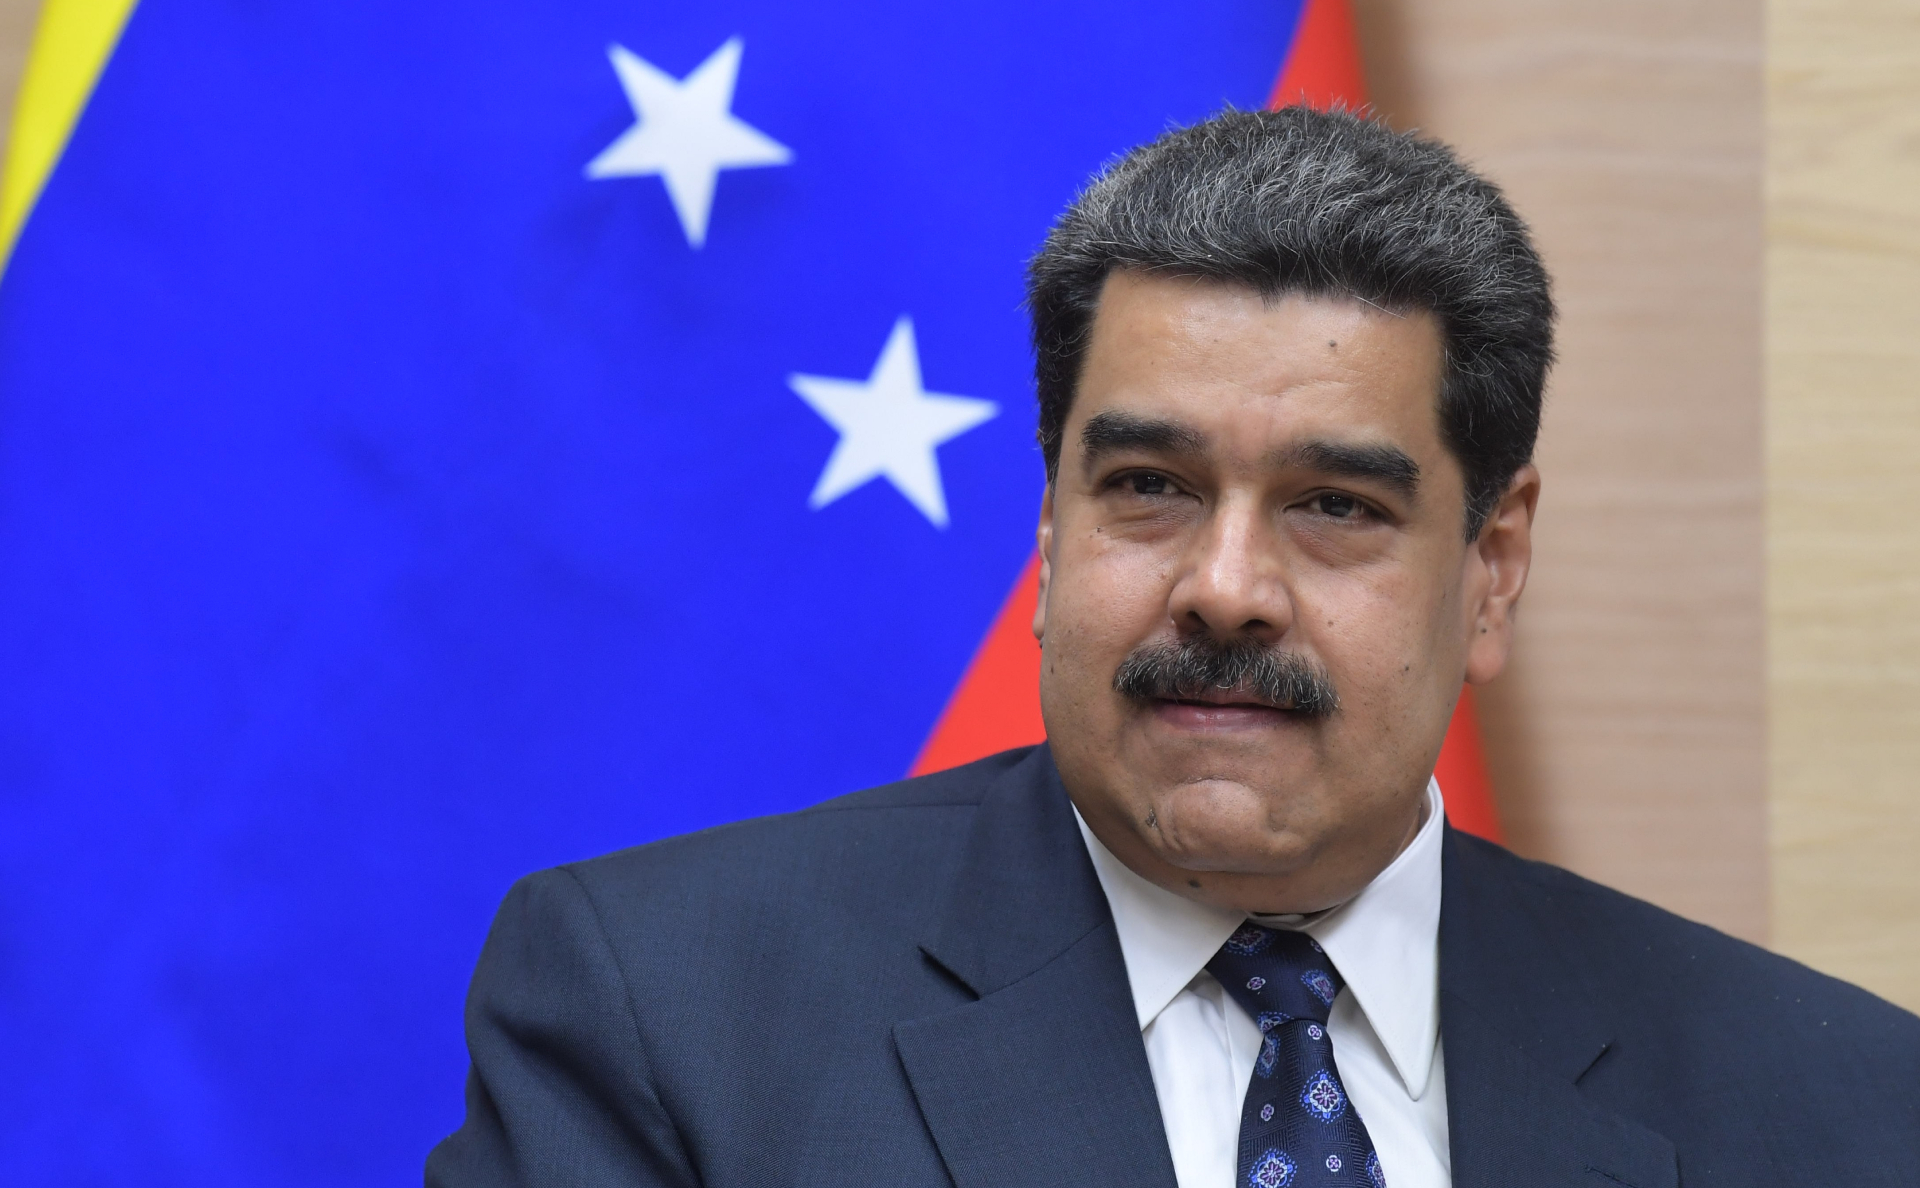 Мадуро высылает посла Евросоюза из Венесуэлы - Фото